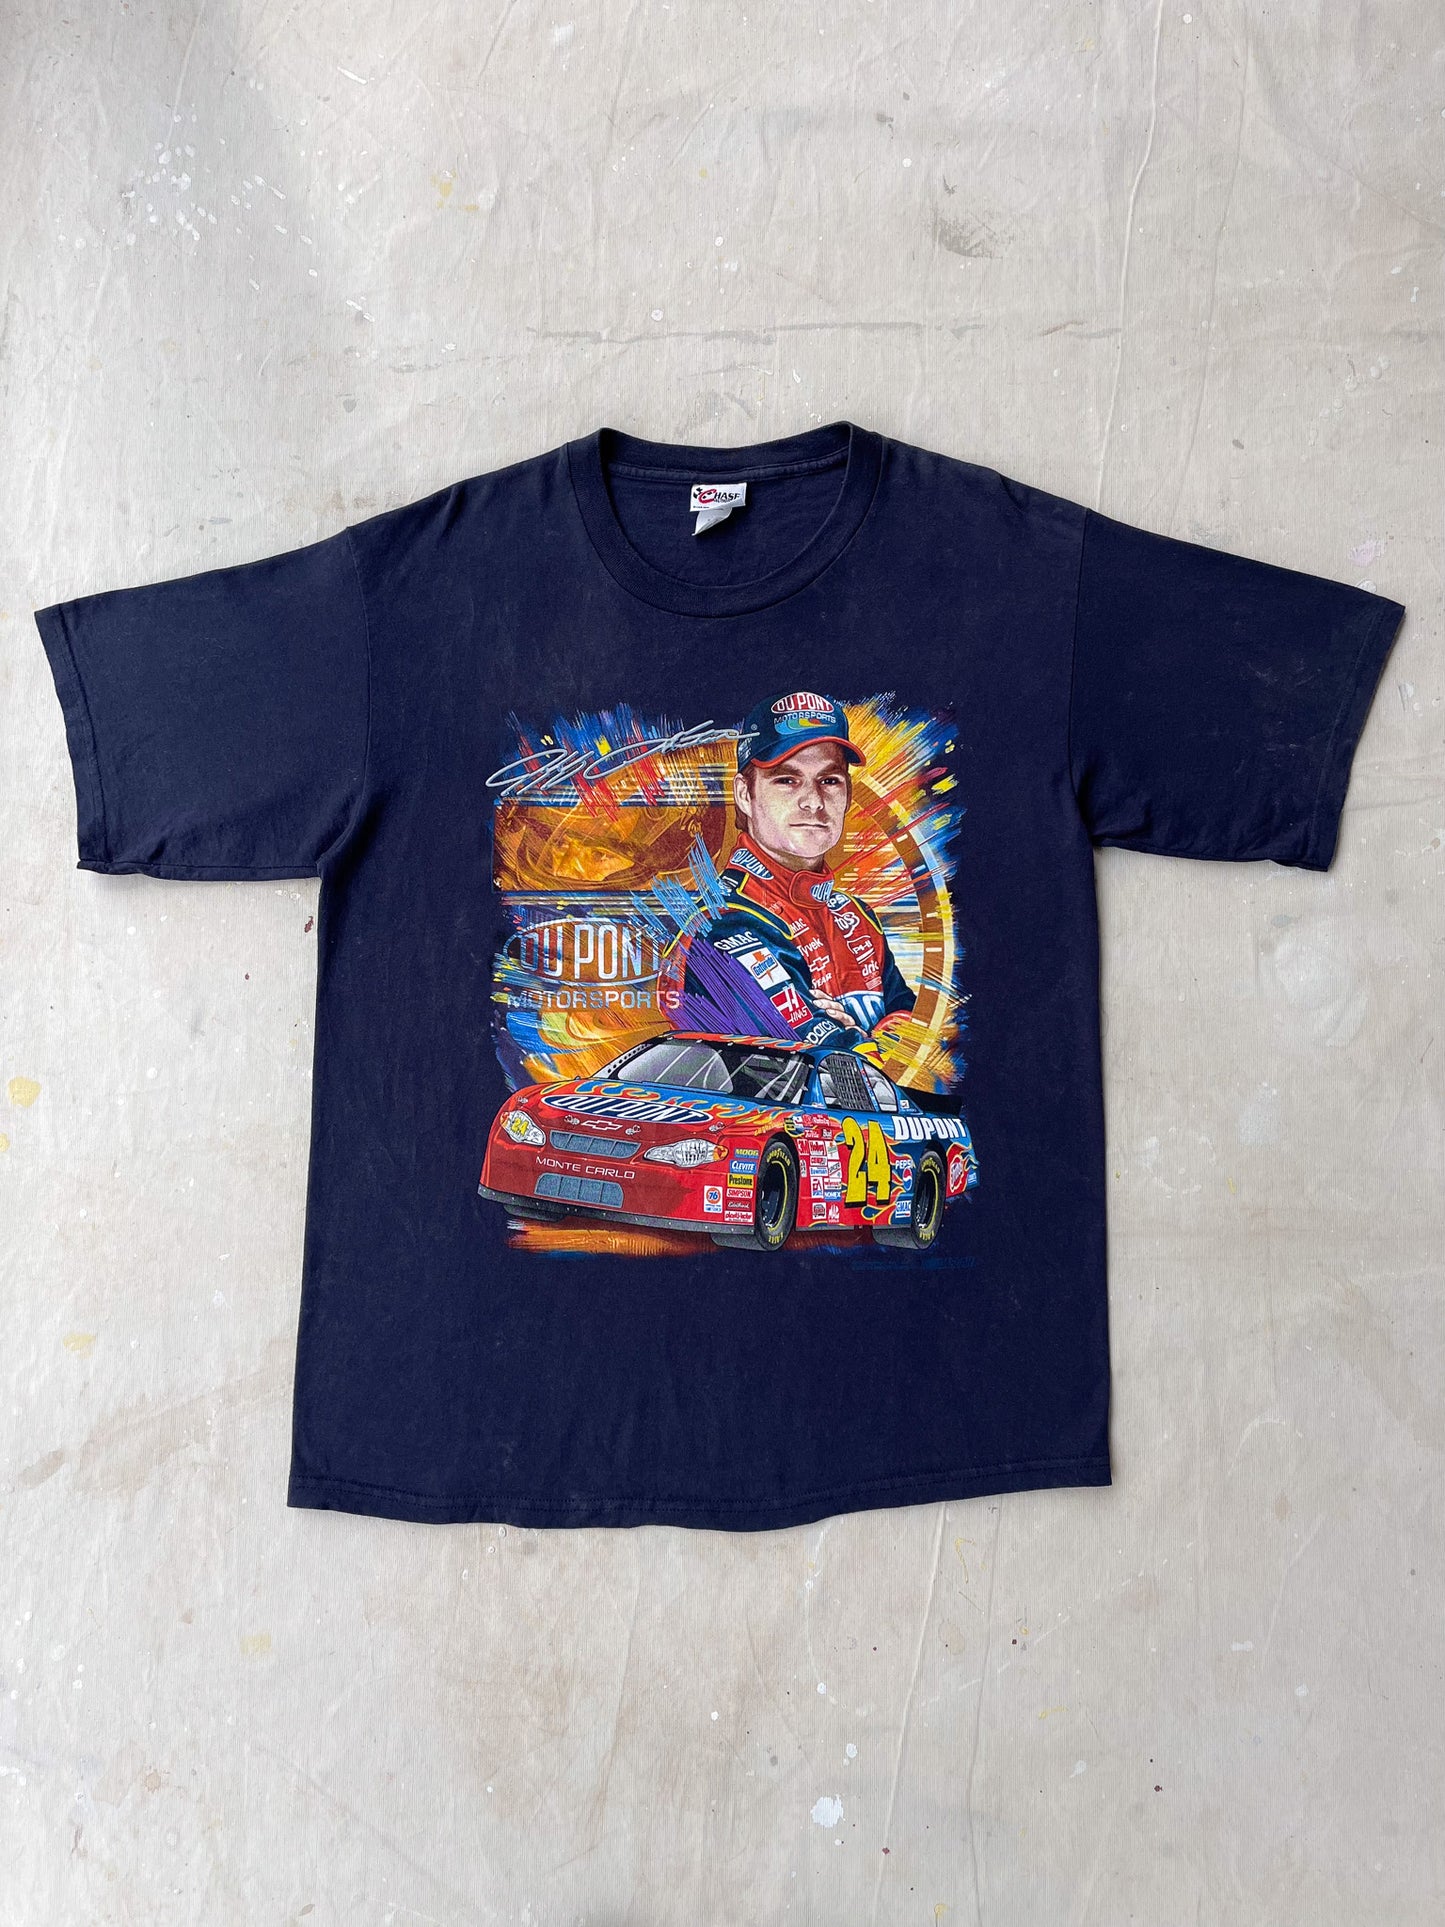 Jeff Gordon Nascar T-Shirt—[L]